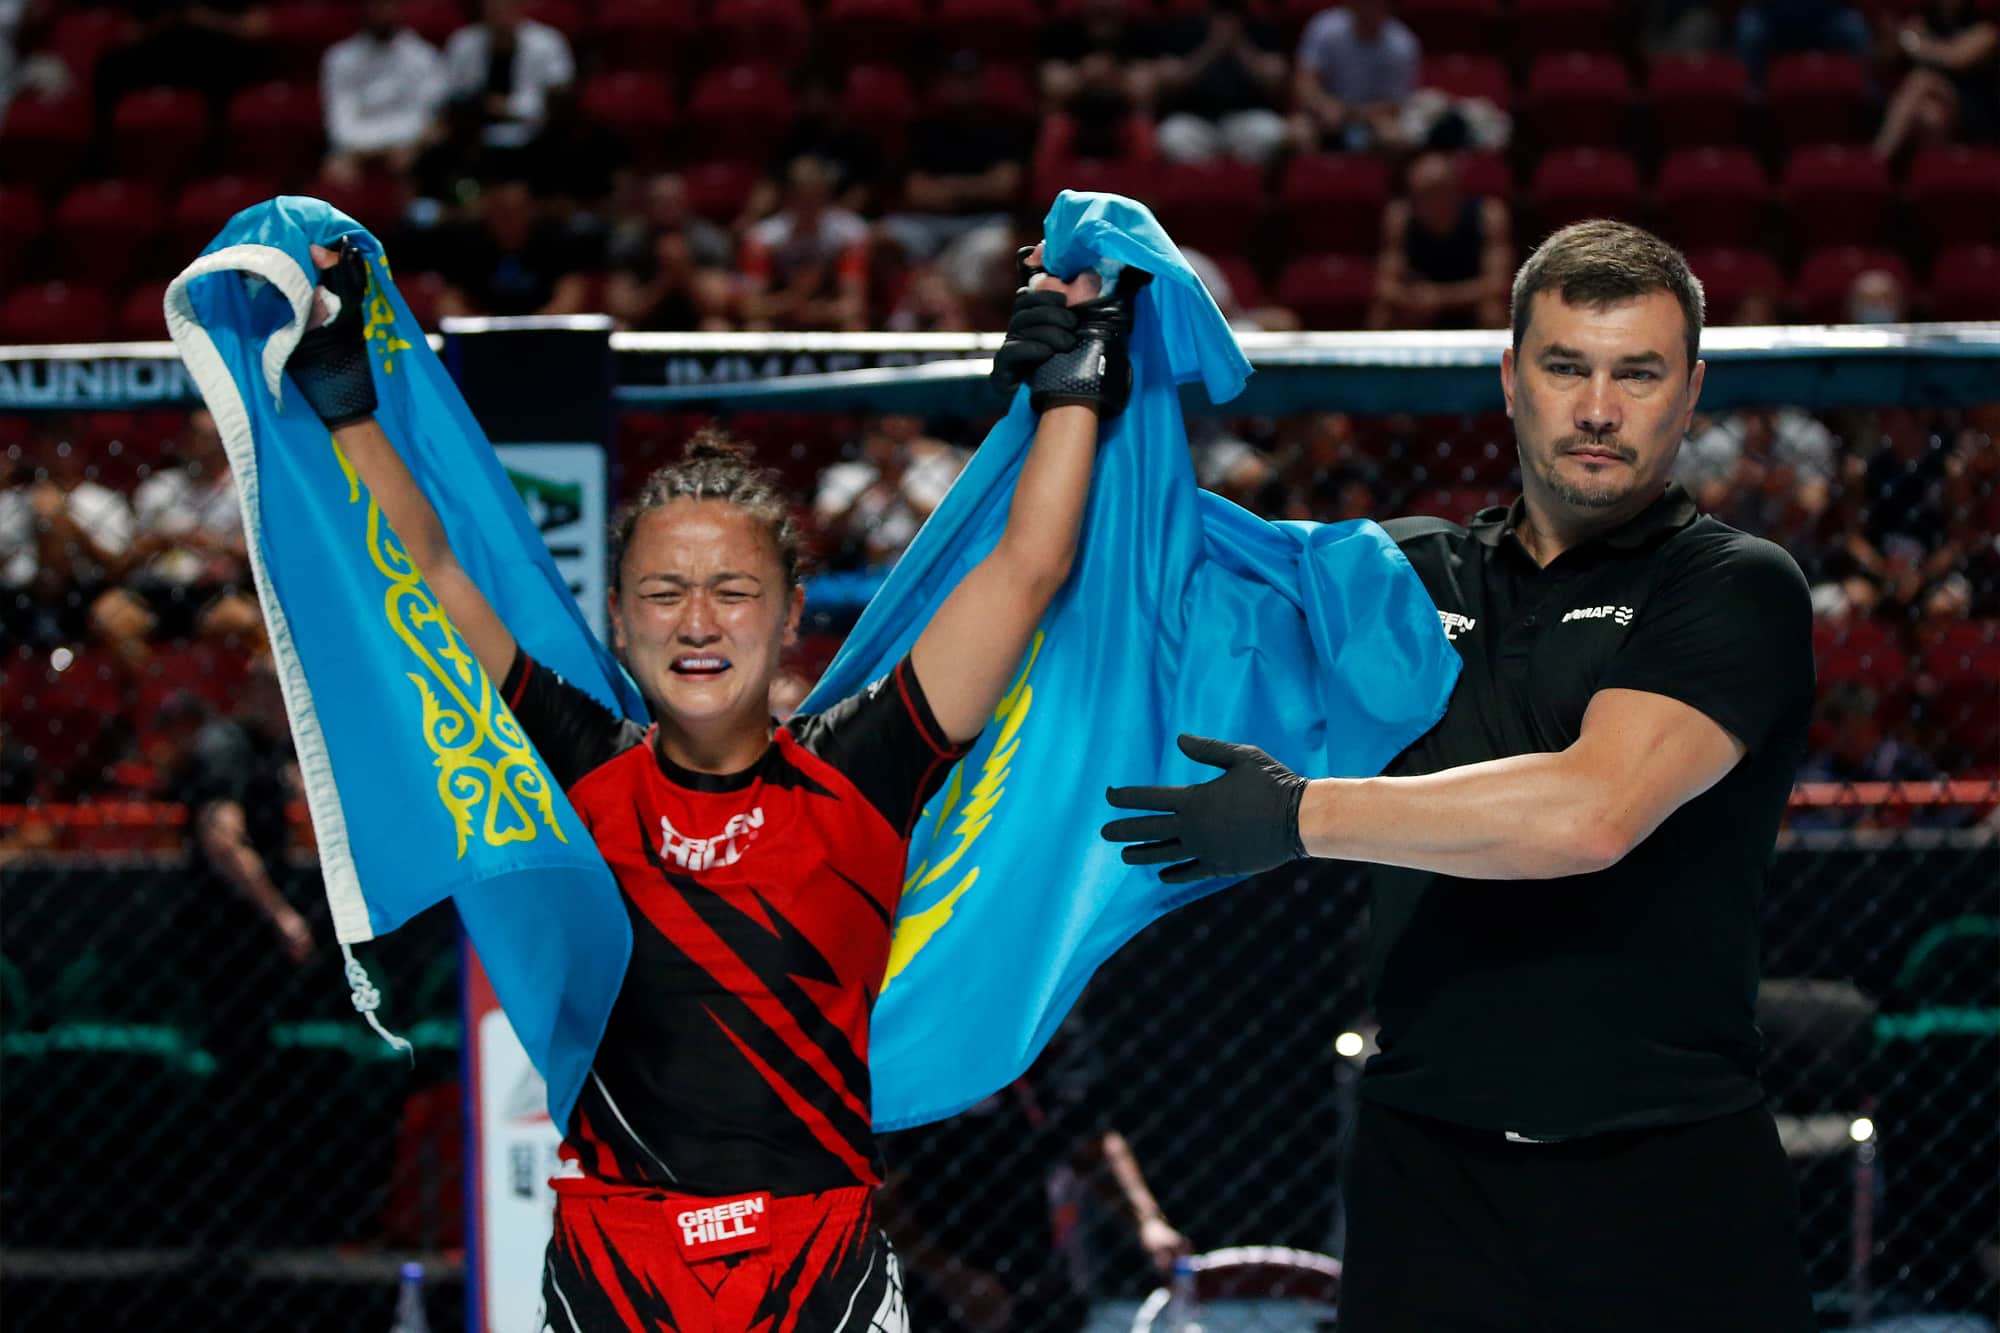 Kazakhstan athletes named to face Balkans team at MMA SuperCup